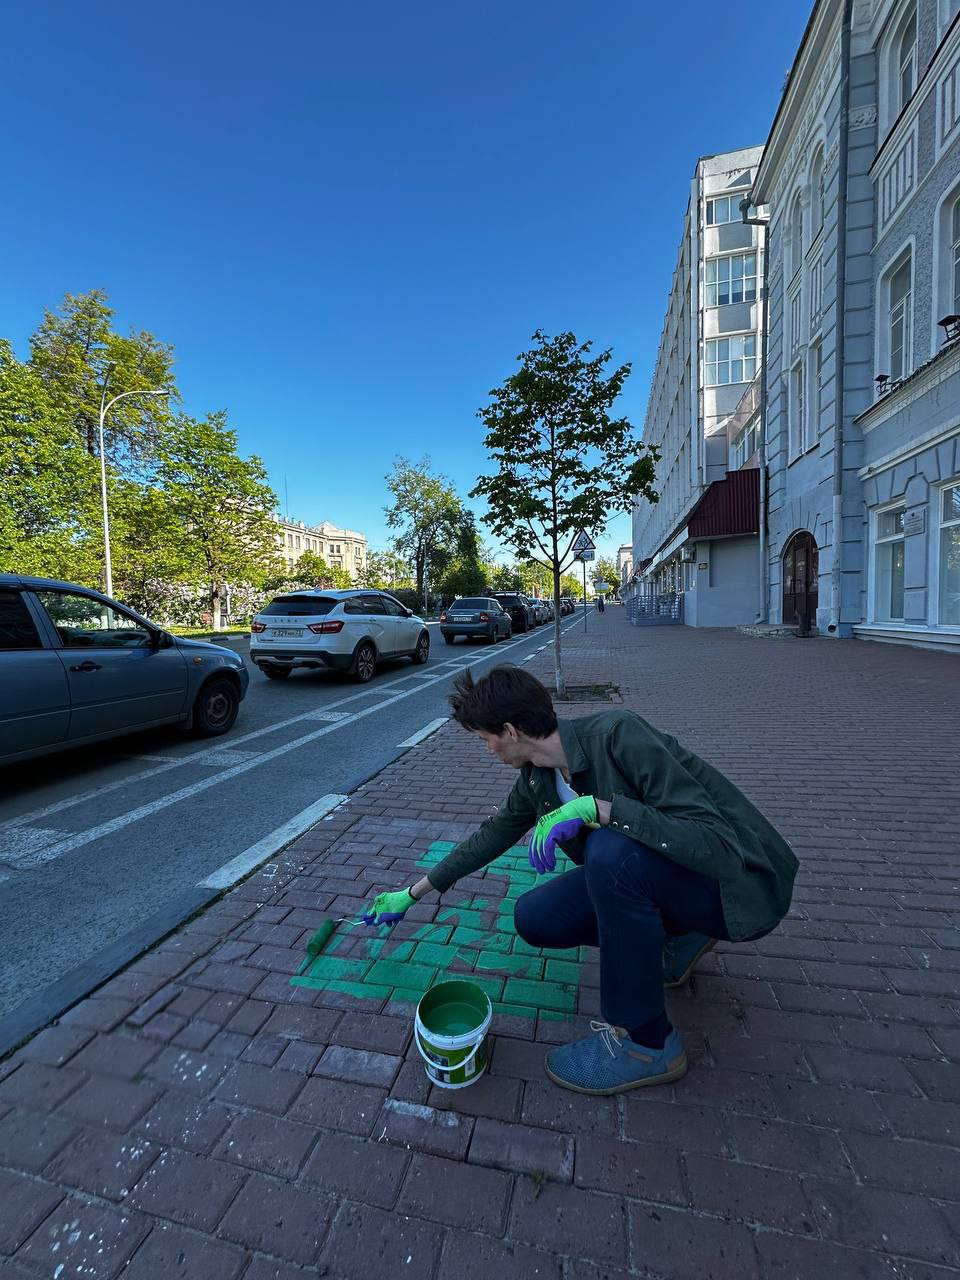 В память о деревьях: ульяновский урбанист покрасил тротуар в зеленый